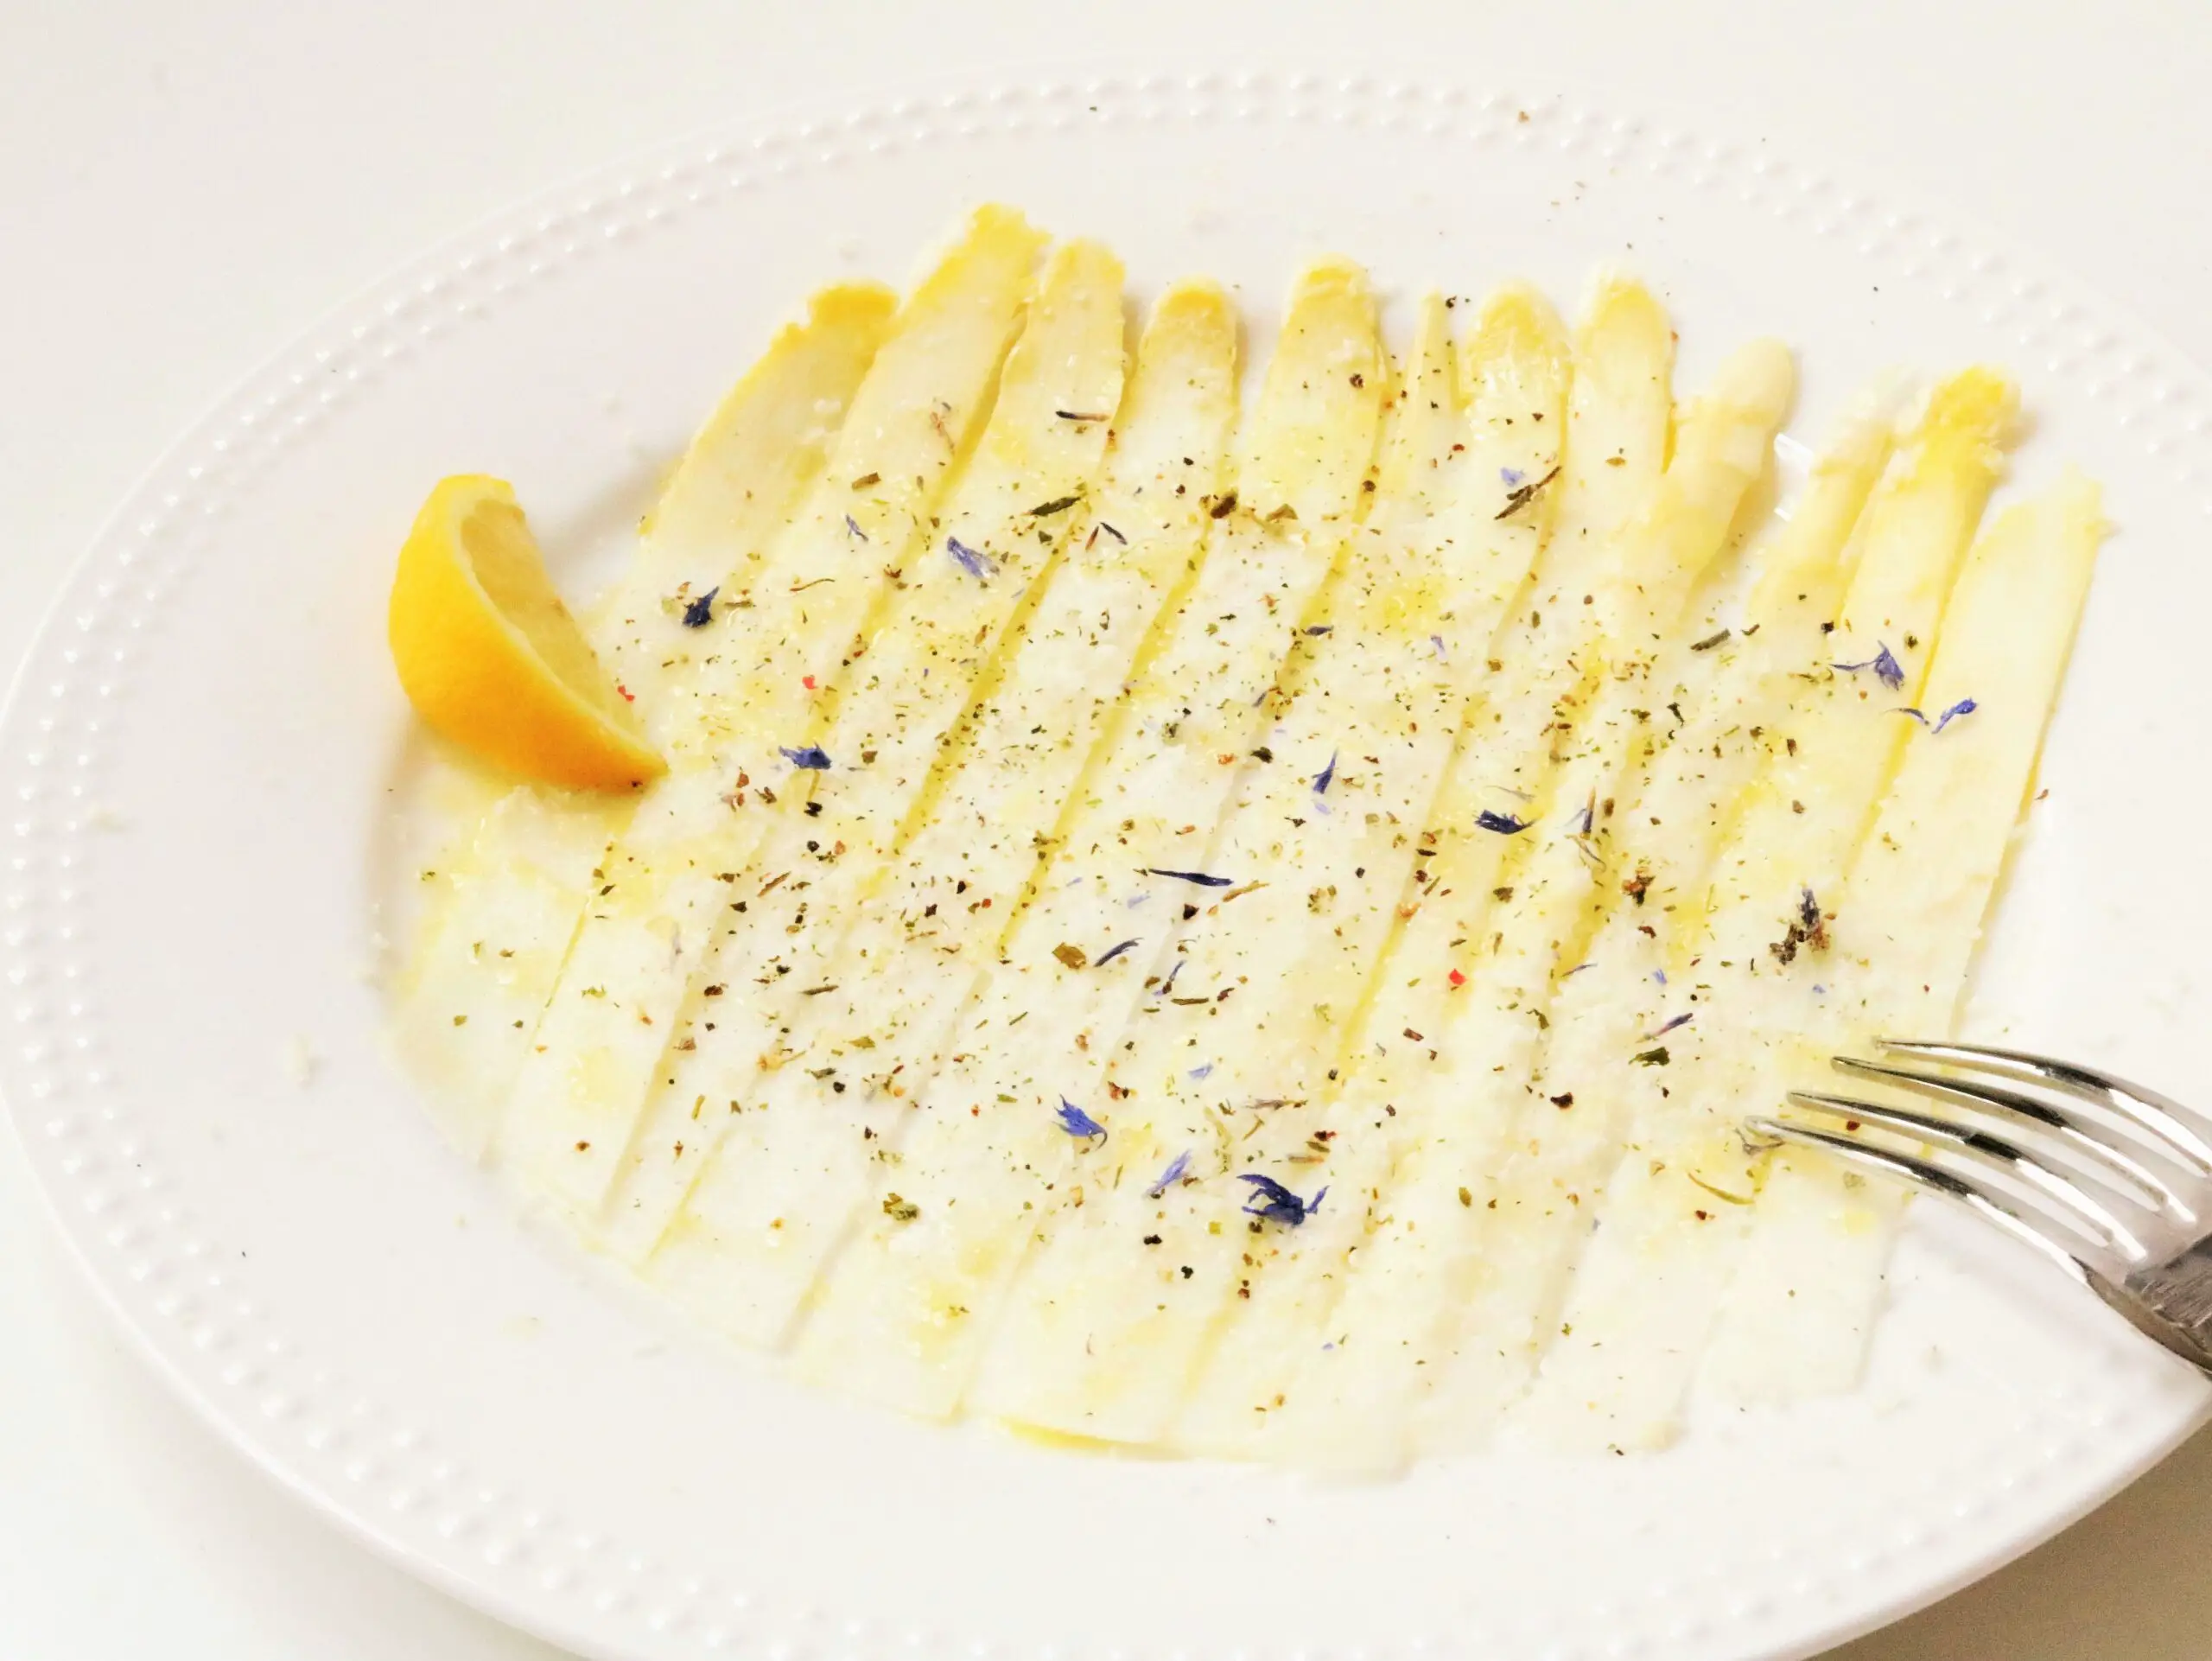 Spargel Carpaccio mit Zitrone, Parmesan und Kräuter-Salz